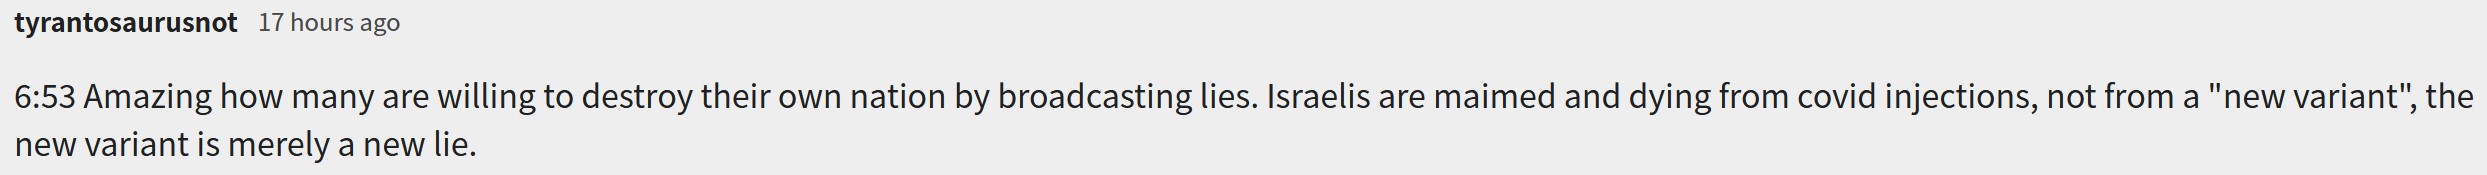 Screenshot 11israel killing jews